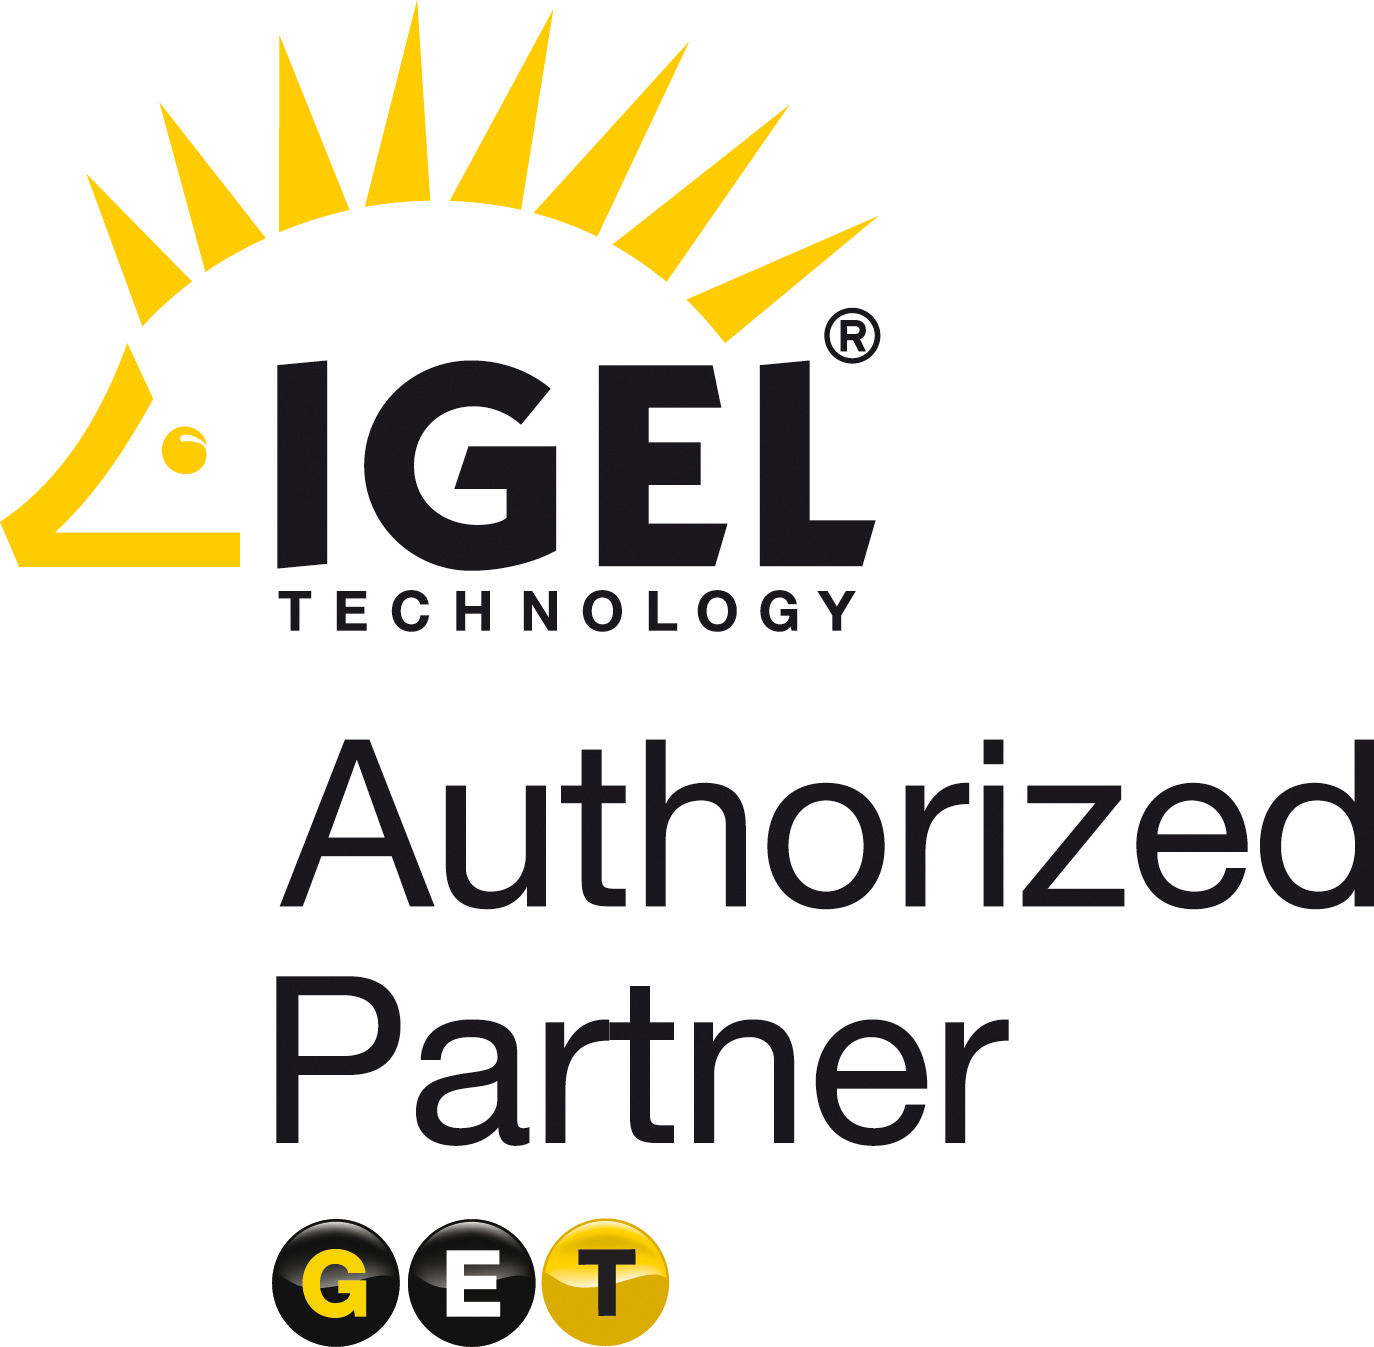 IGEL--GET_partner_Logo--092007.jpg